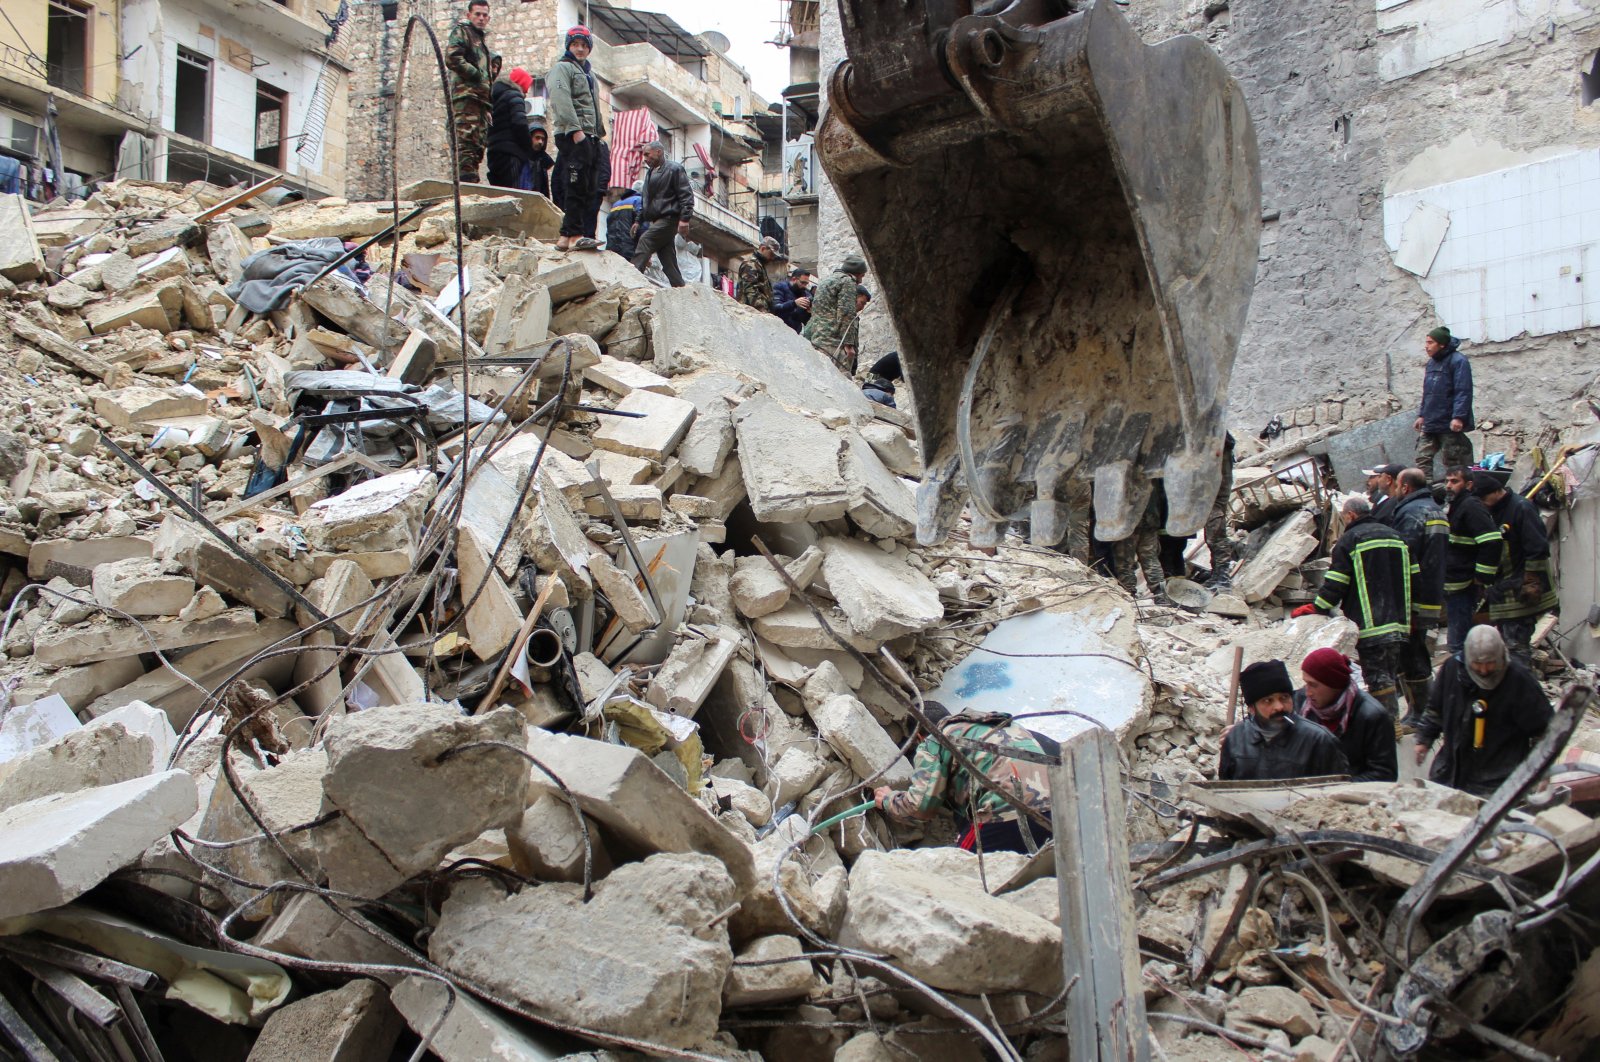 Israel mengatakan menyetujui bantuan untuk gempa yang melanda Suriah, Damaskus menolak permintaan